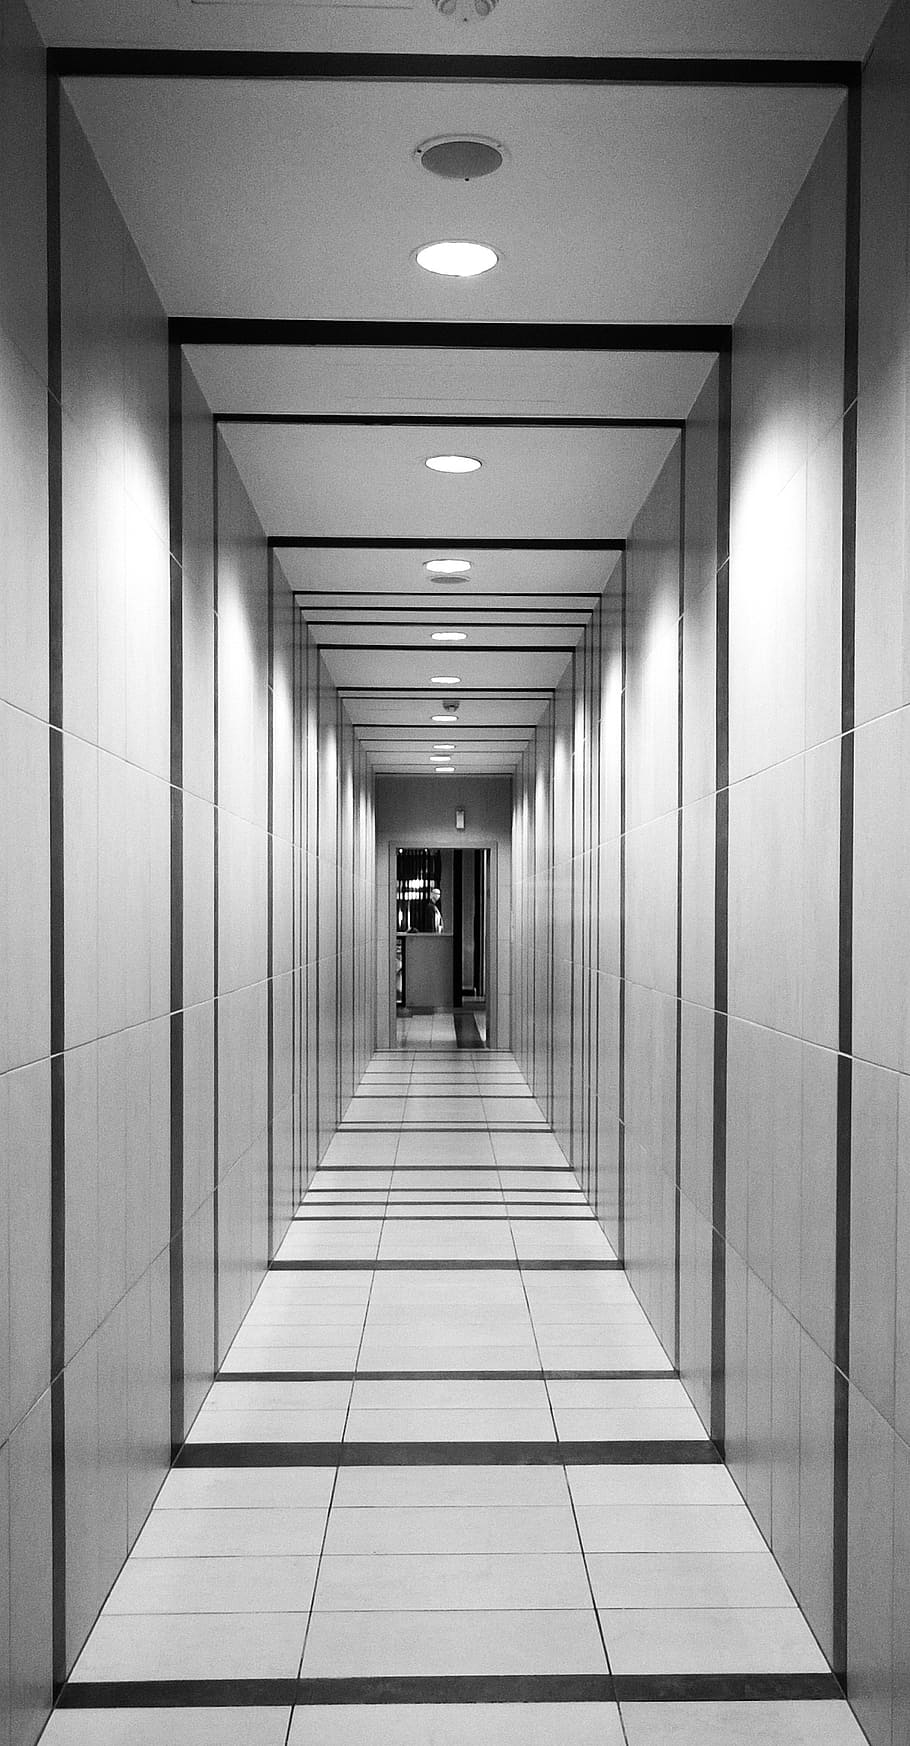 white corridor, hallway, perspective, tunnel, architecture, interior